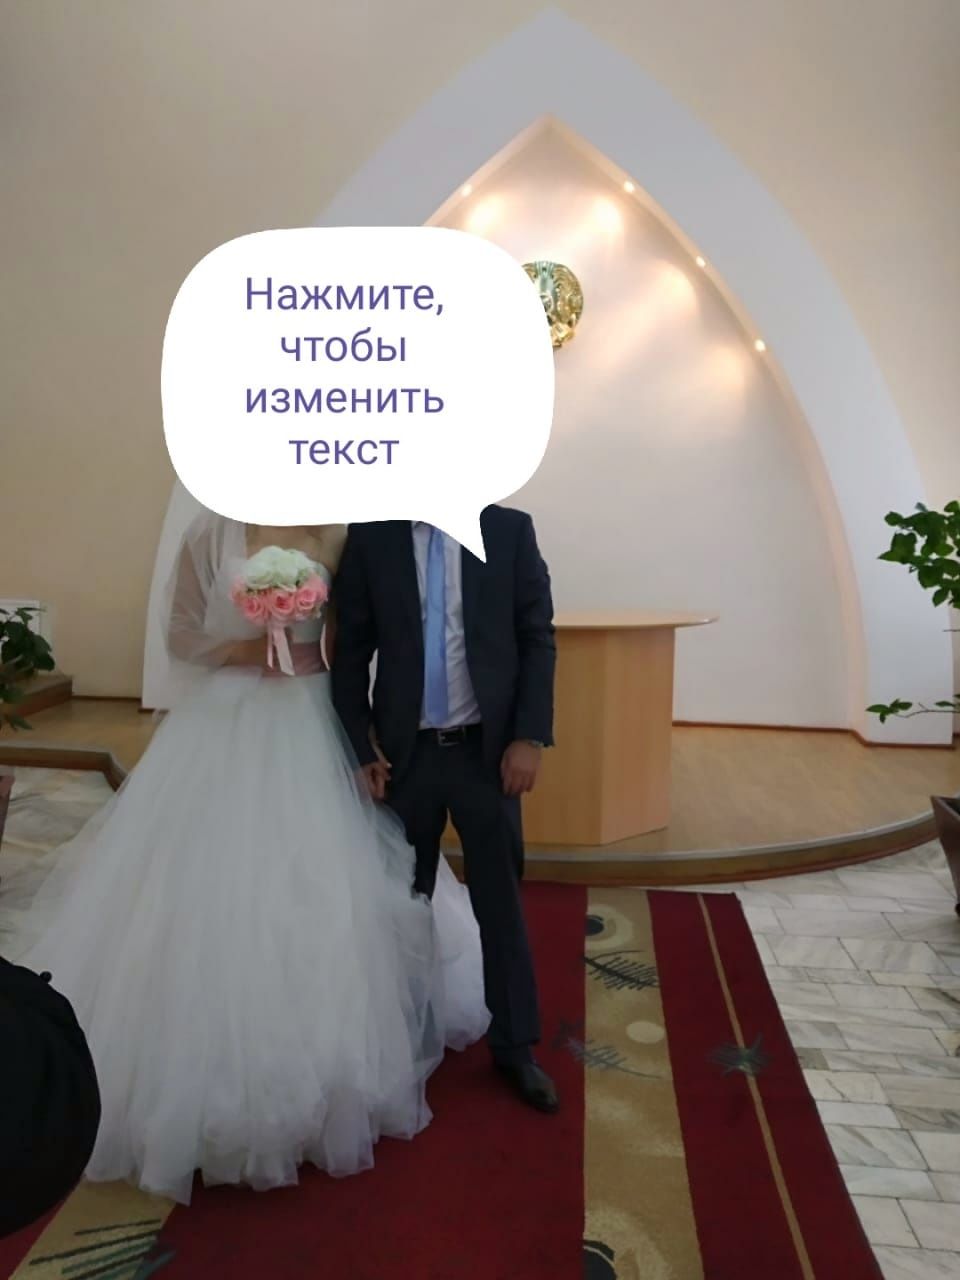 свадебное платье Алматы